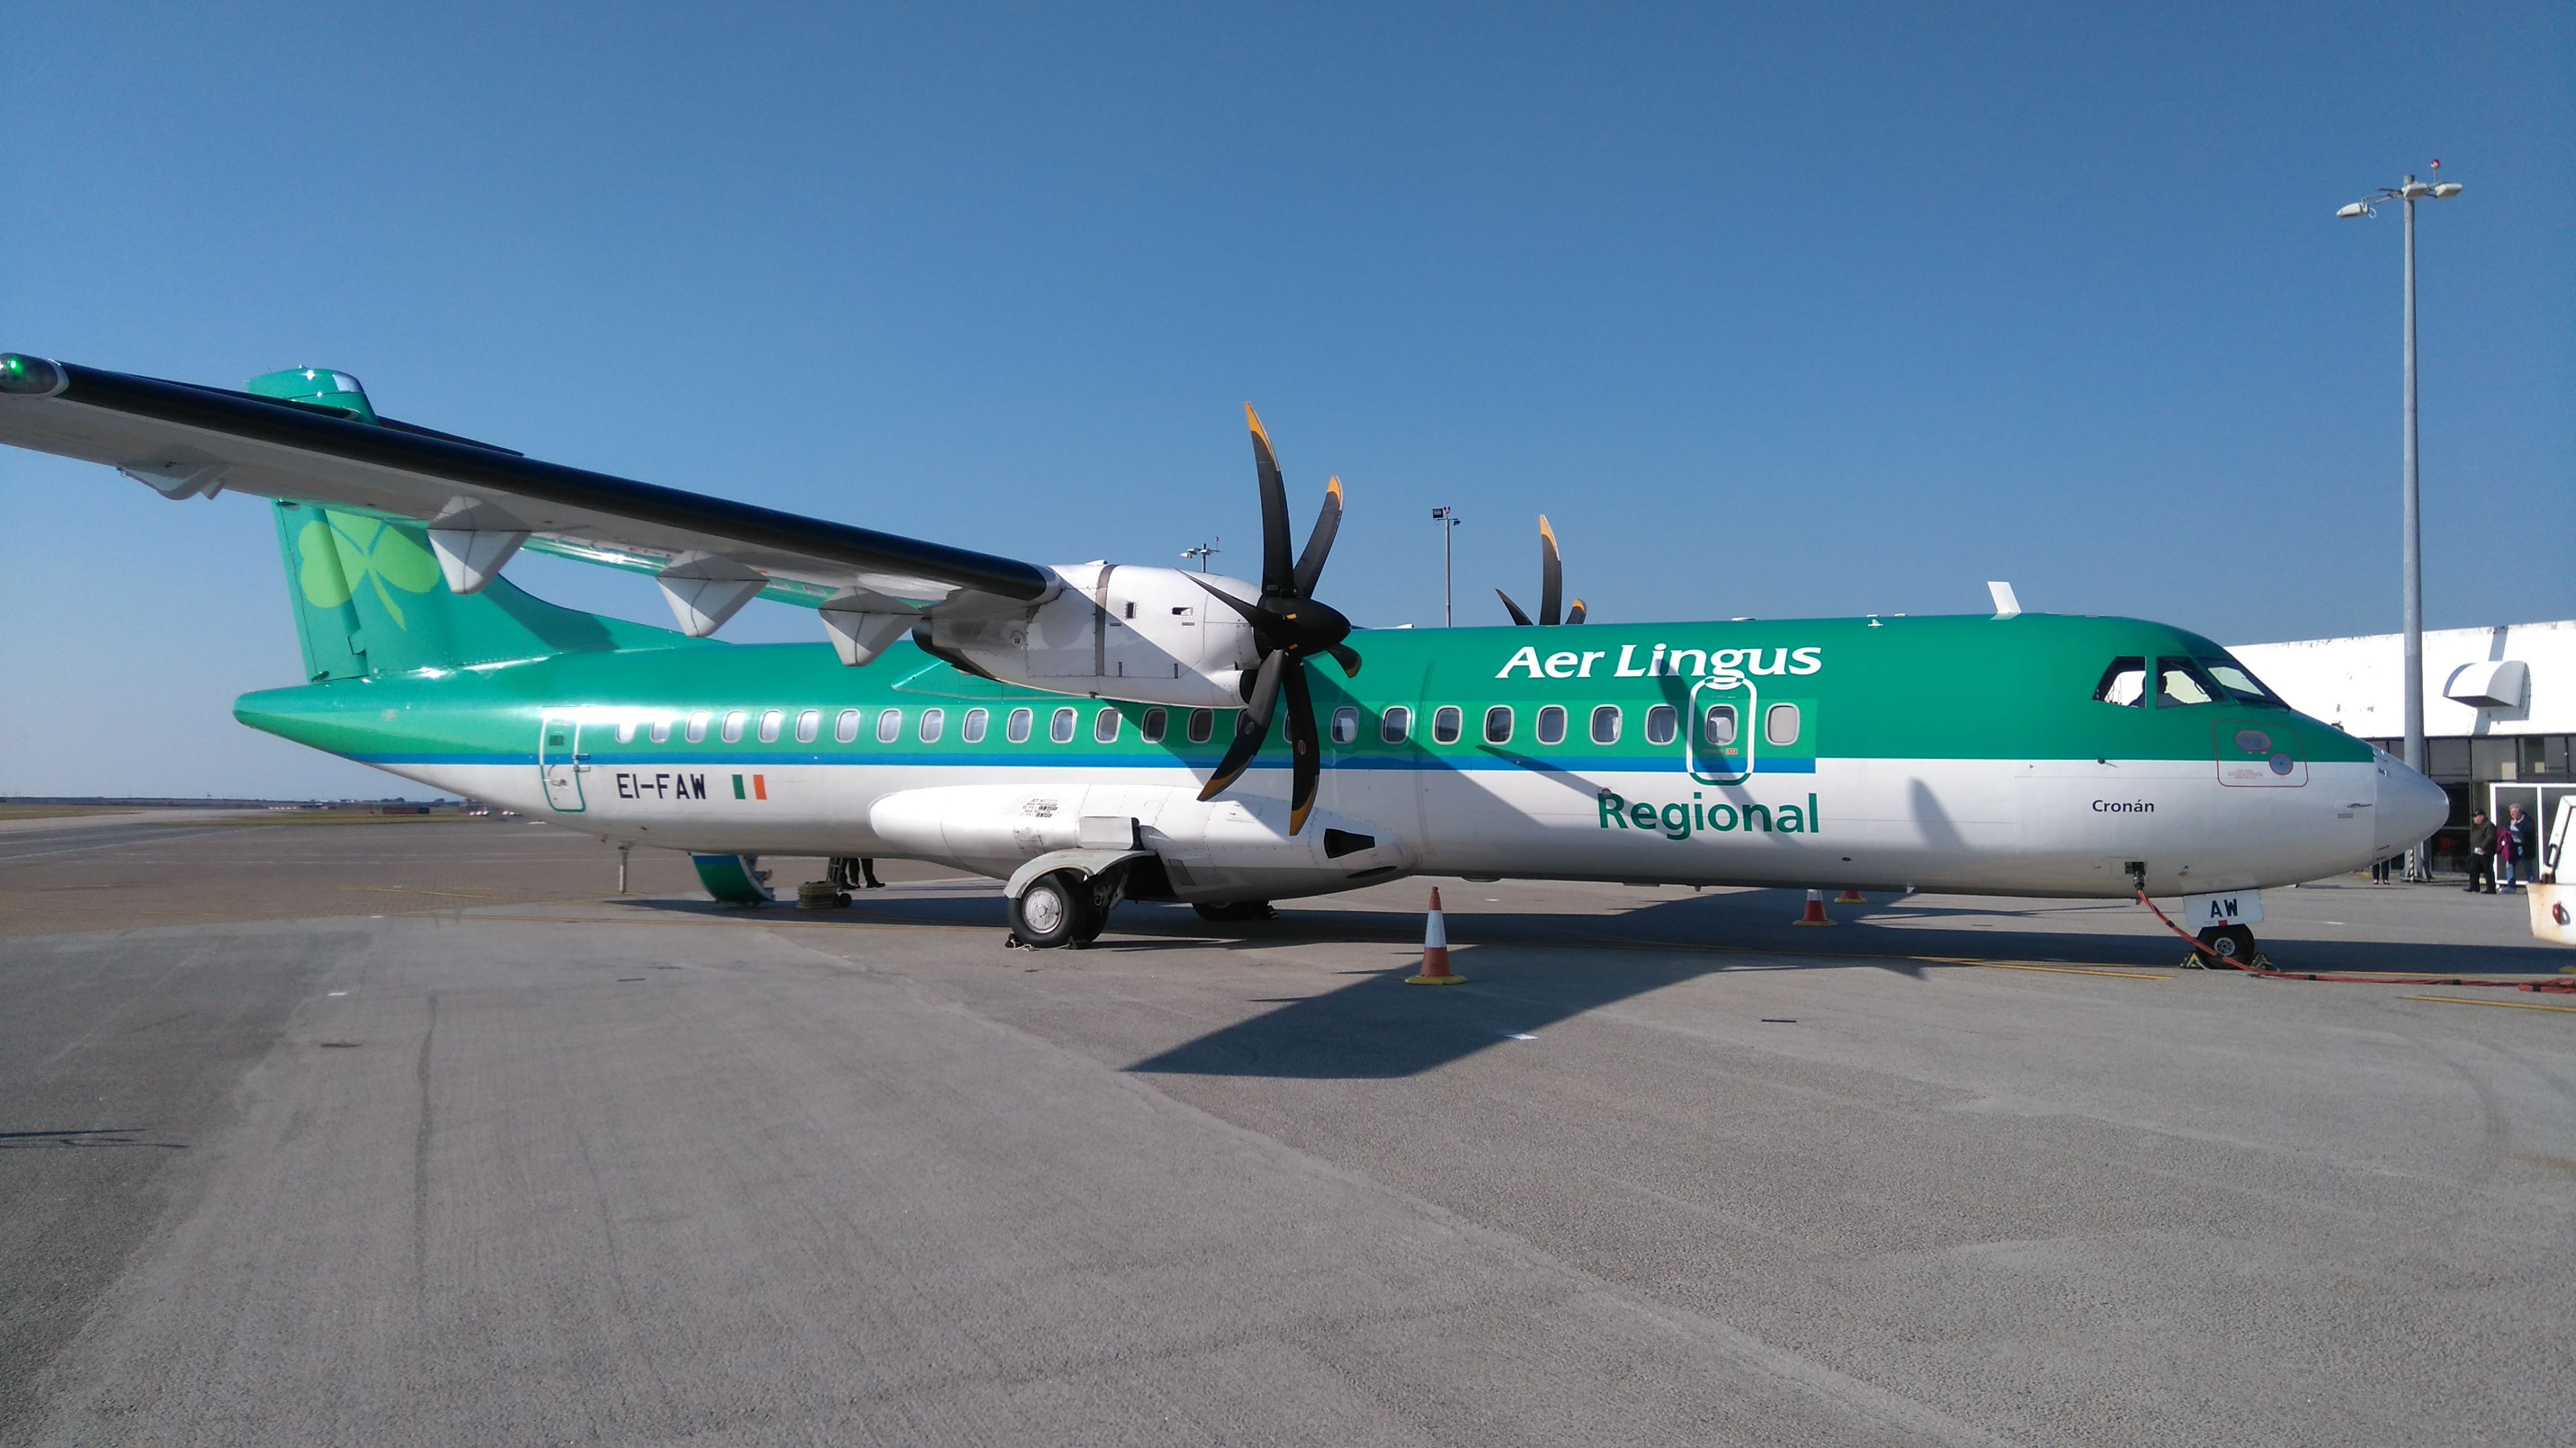 Aer Lingus Regional ATR Aircraft